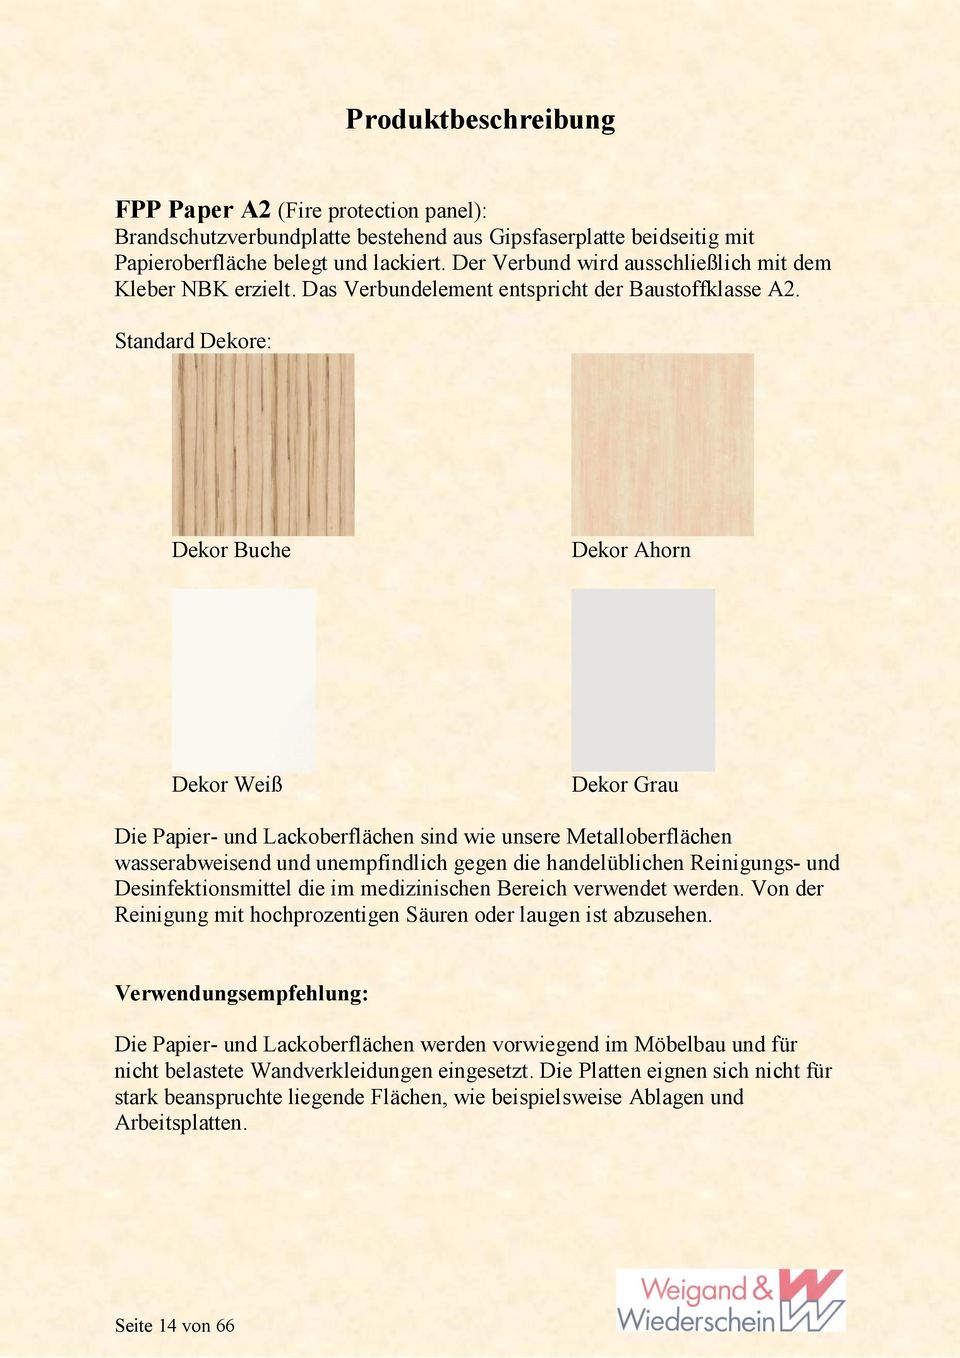 Standard Dekore: Dekor Buche Dekor Ahorn Dekor Weiß Dekor Grau Die Papier- und Lackoberflächen sind wie unsere Metalloberflächen wasserabweisend und unempfindlich gegen die handelüblichen Reinigungs-